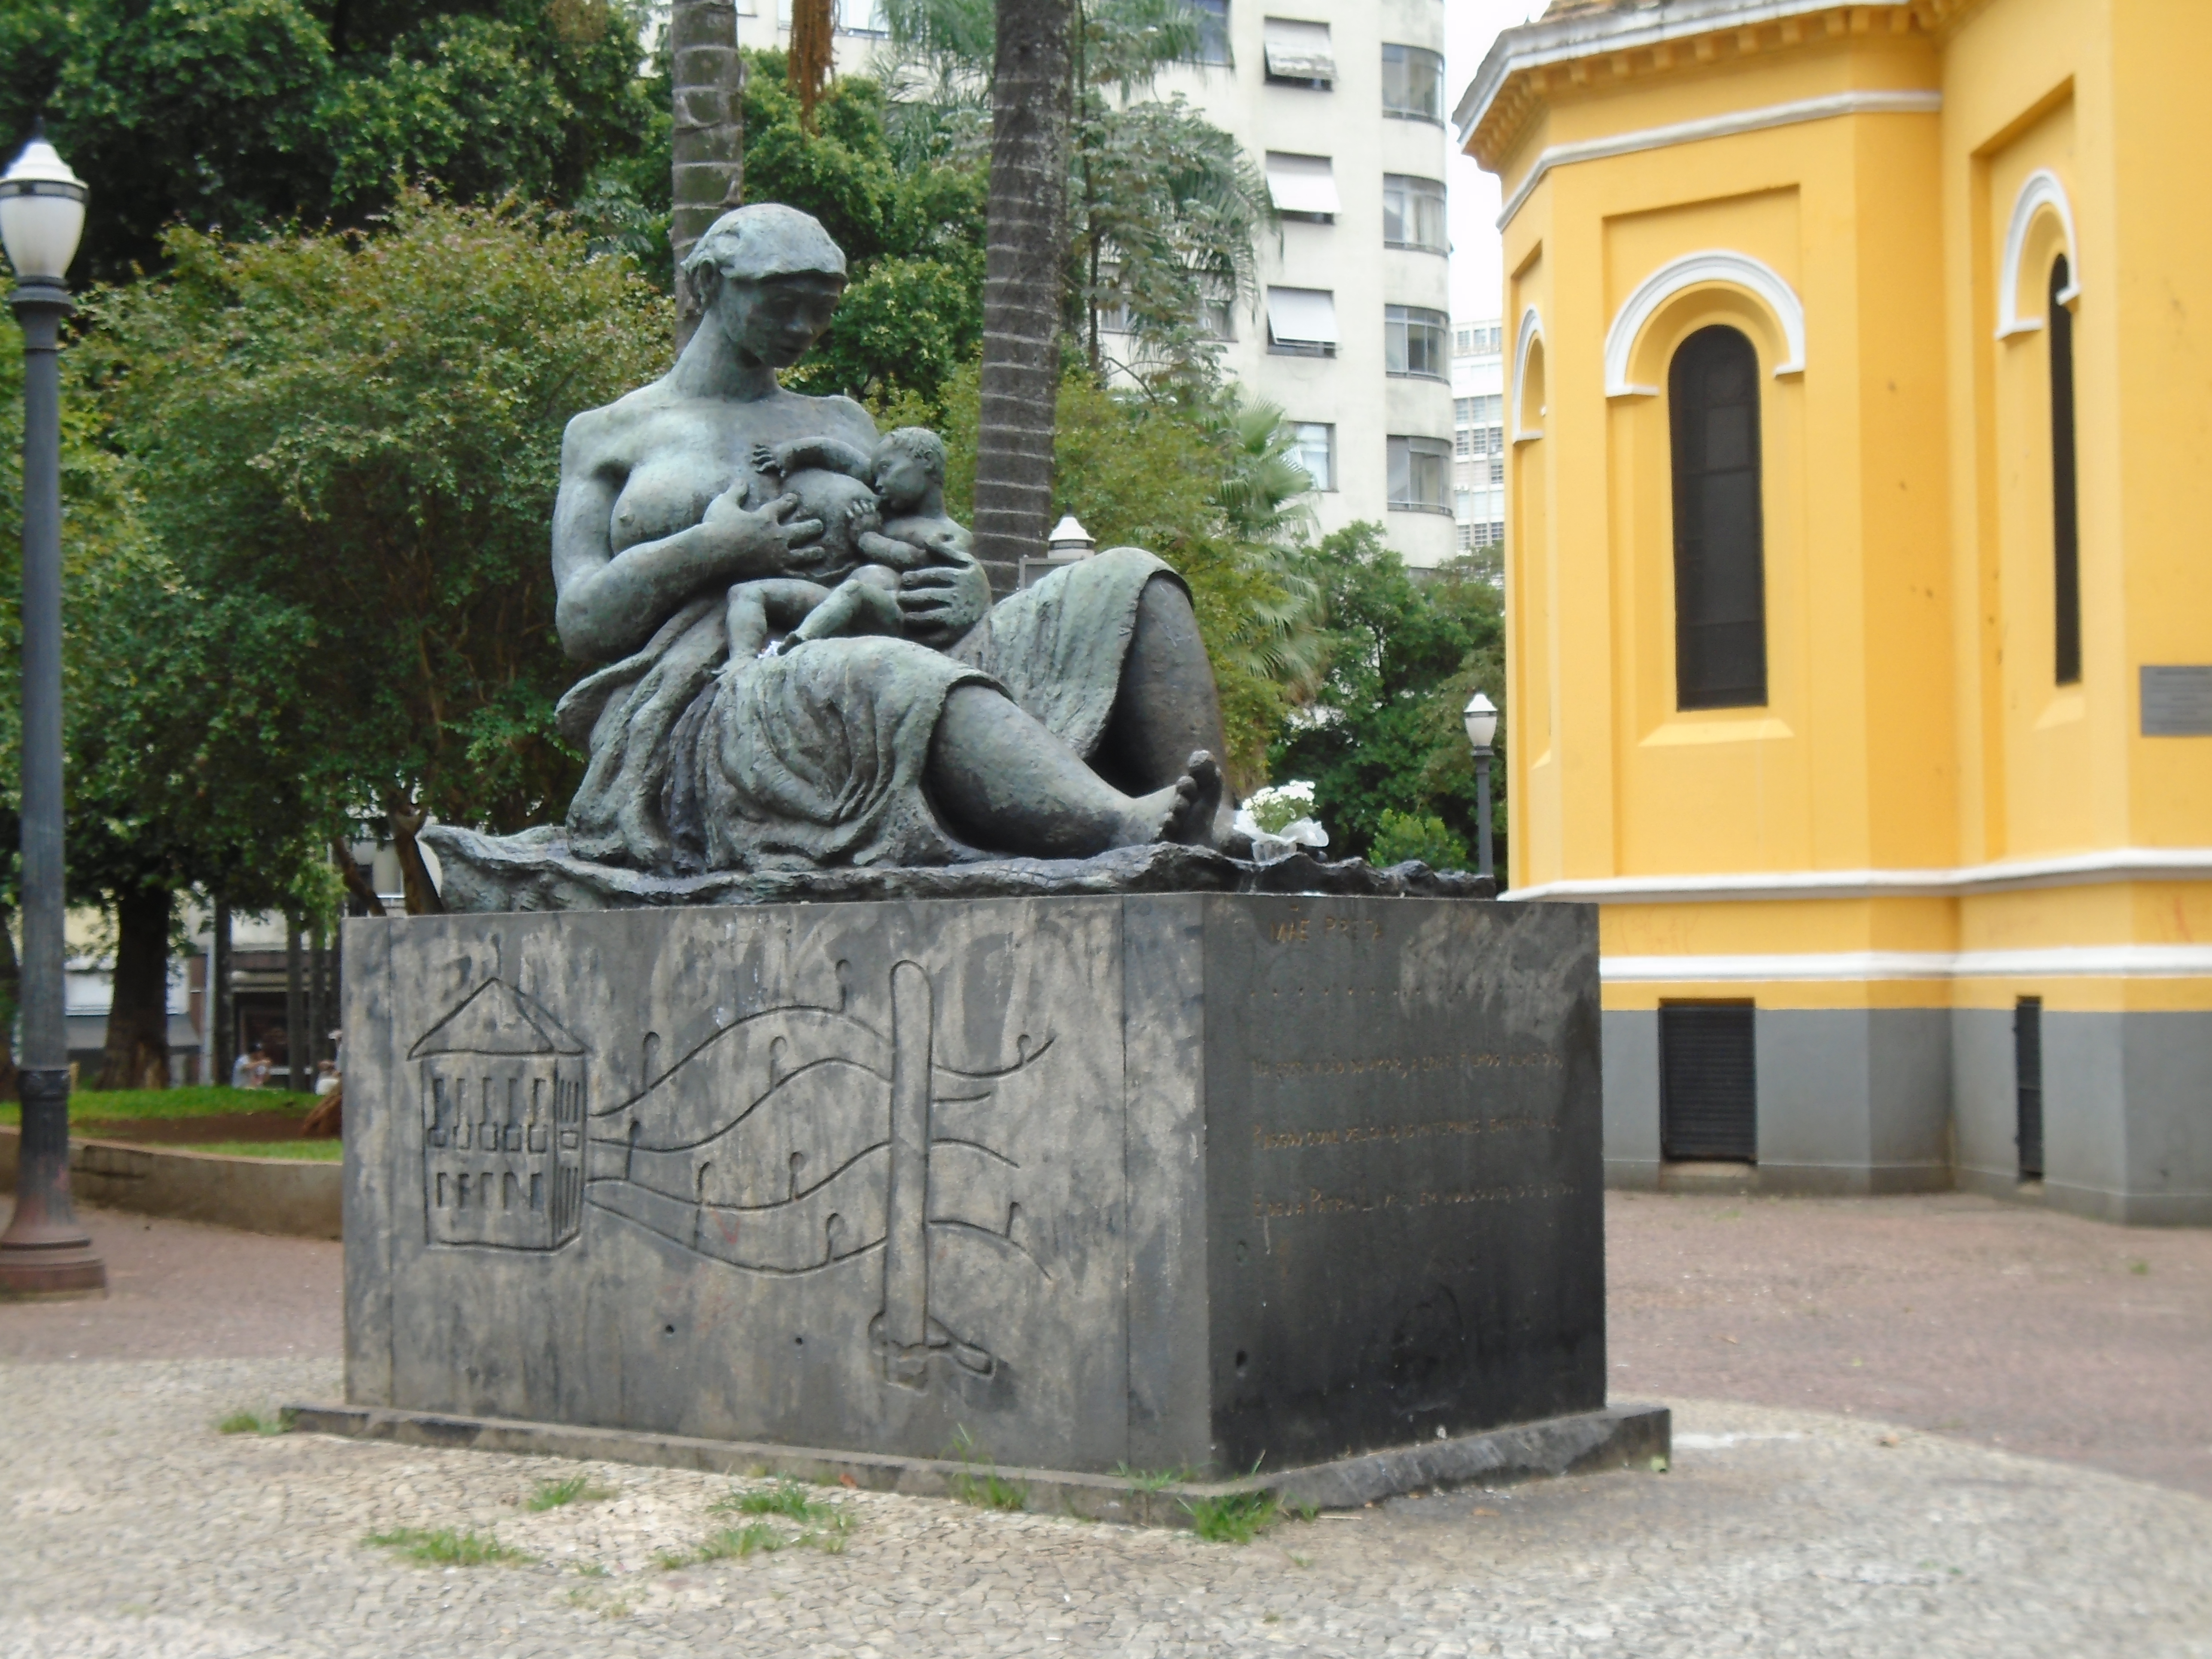 Imagem do monumento "Mãe preta": mulher sentada amamenta bebê. Ela está enrolada em um tecido e seus seios estão descobertos. Fim da descrição